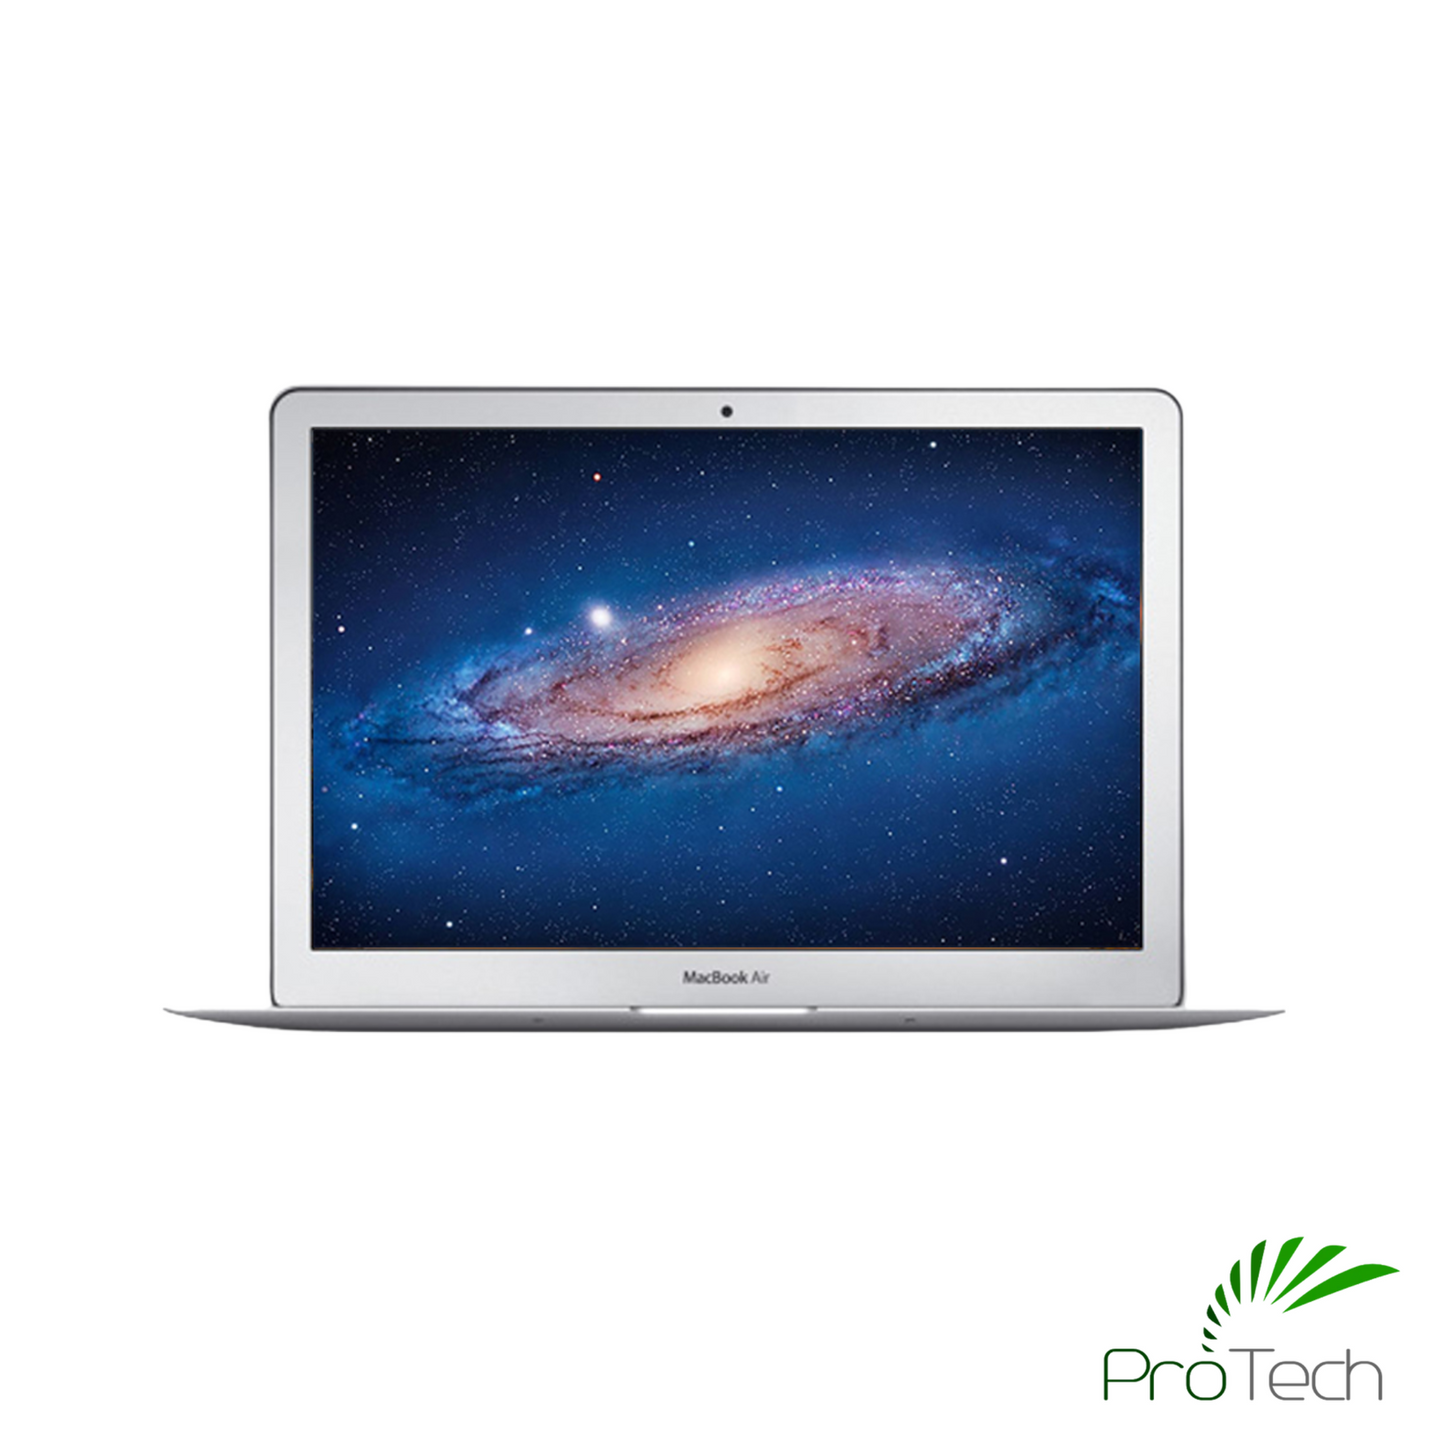 Apple MacBook Air 13 (Mid 2012) | Core i5 | 4GB RAM | 256GB SSD